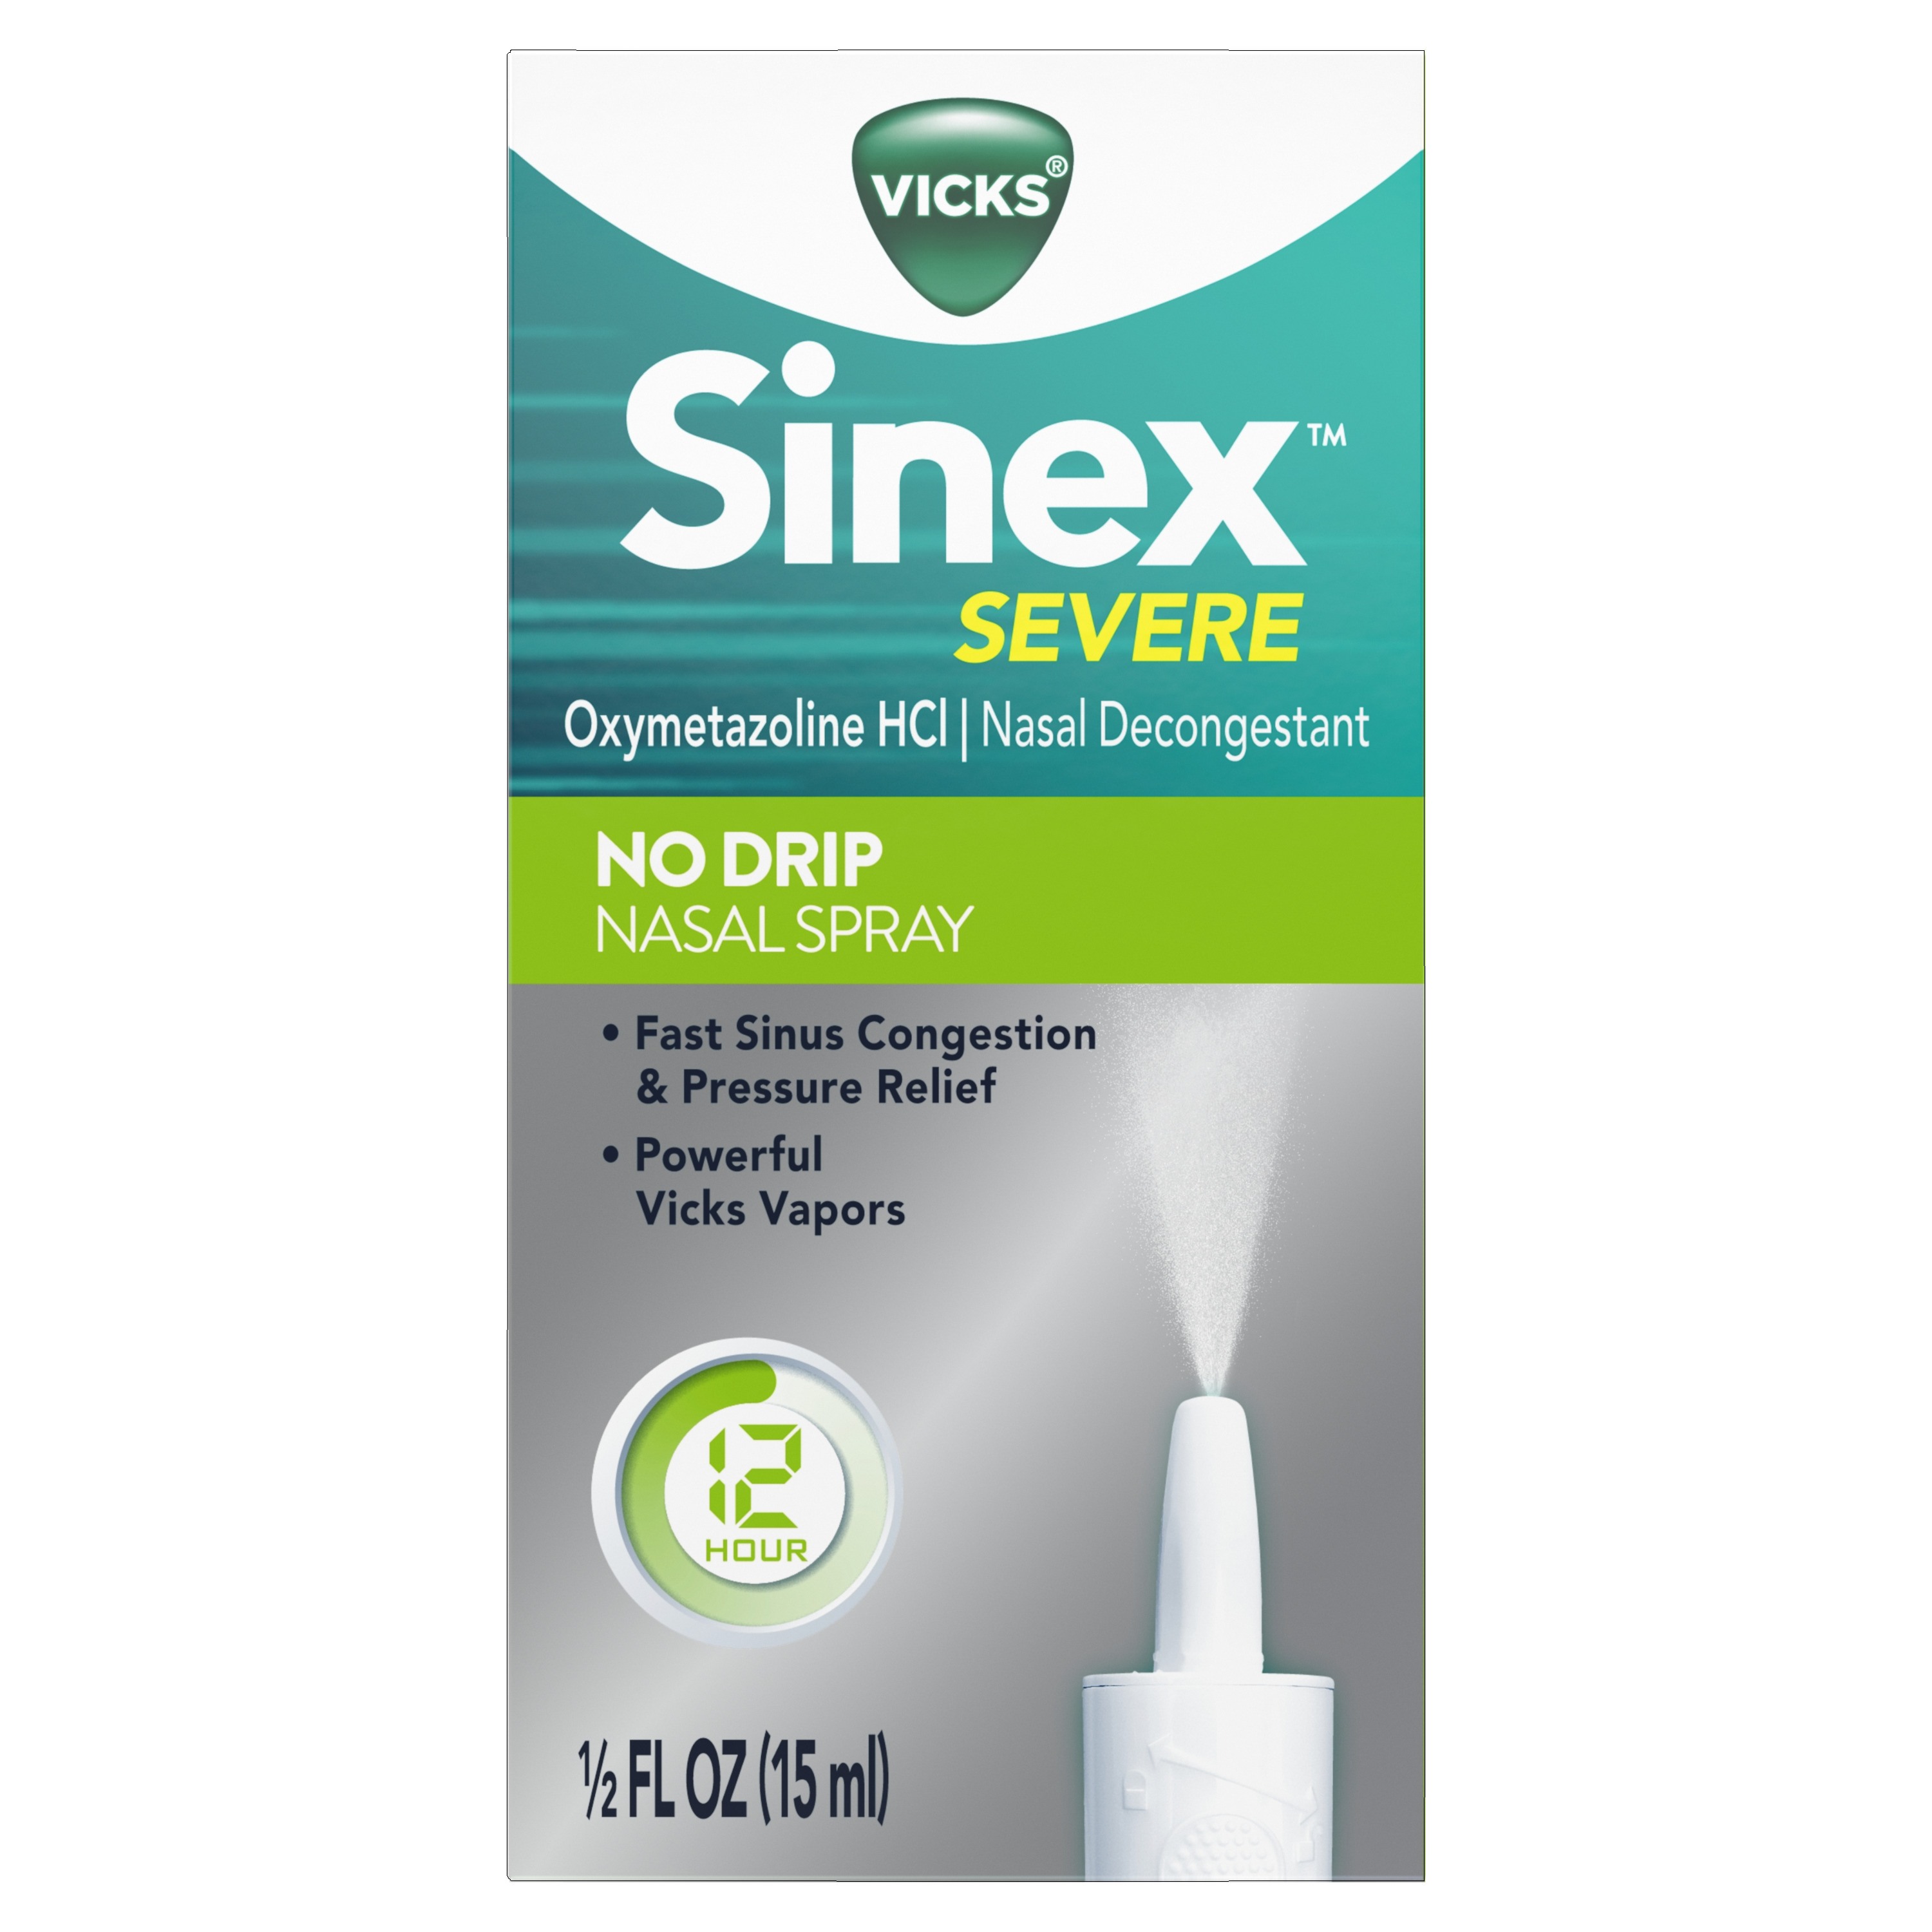 Vicks Sinex - Spray nasal severo, niebla ultra fina original, medicina  descongestionante, alivio de la nariz tapada debido al frío o alergia, y